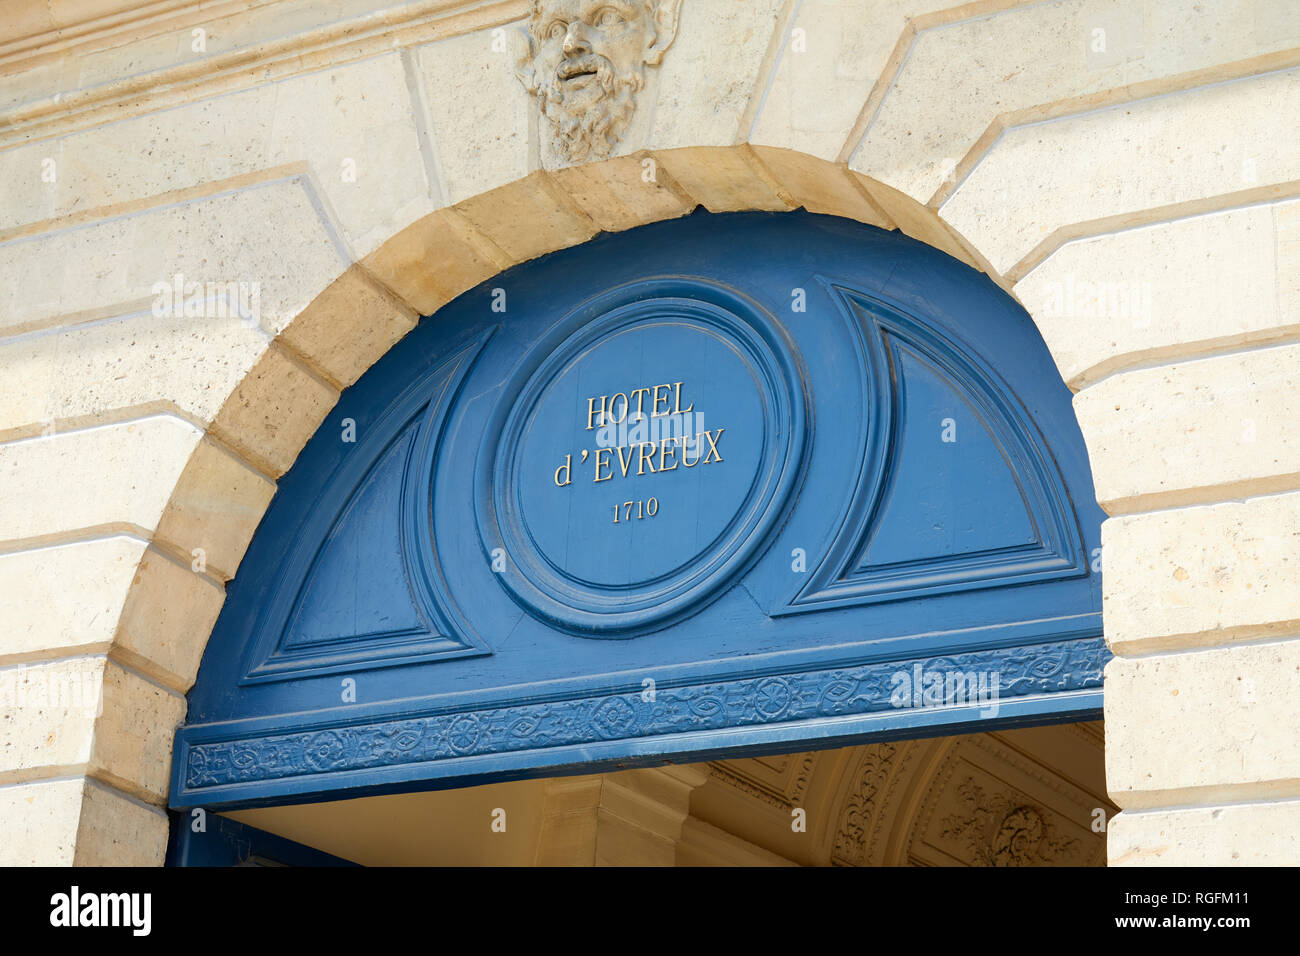 PARIS, FRANCE - 07 juillet 2018 : l'hôtel d'Evreux signe et porte bleue de la place Vendôme à Paris Banque D'Images